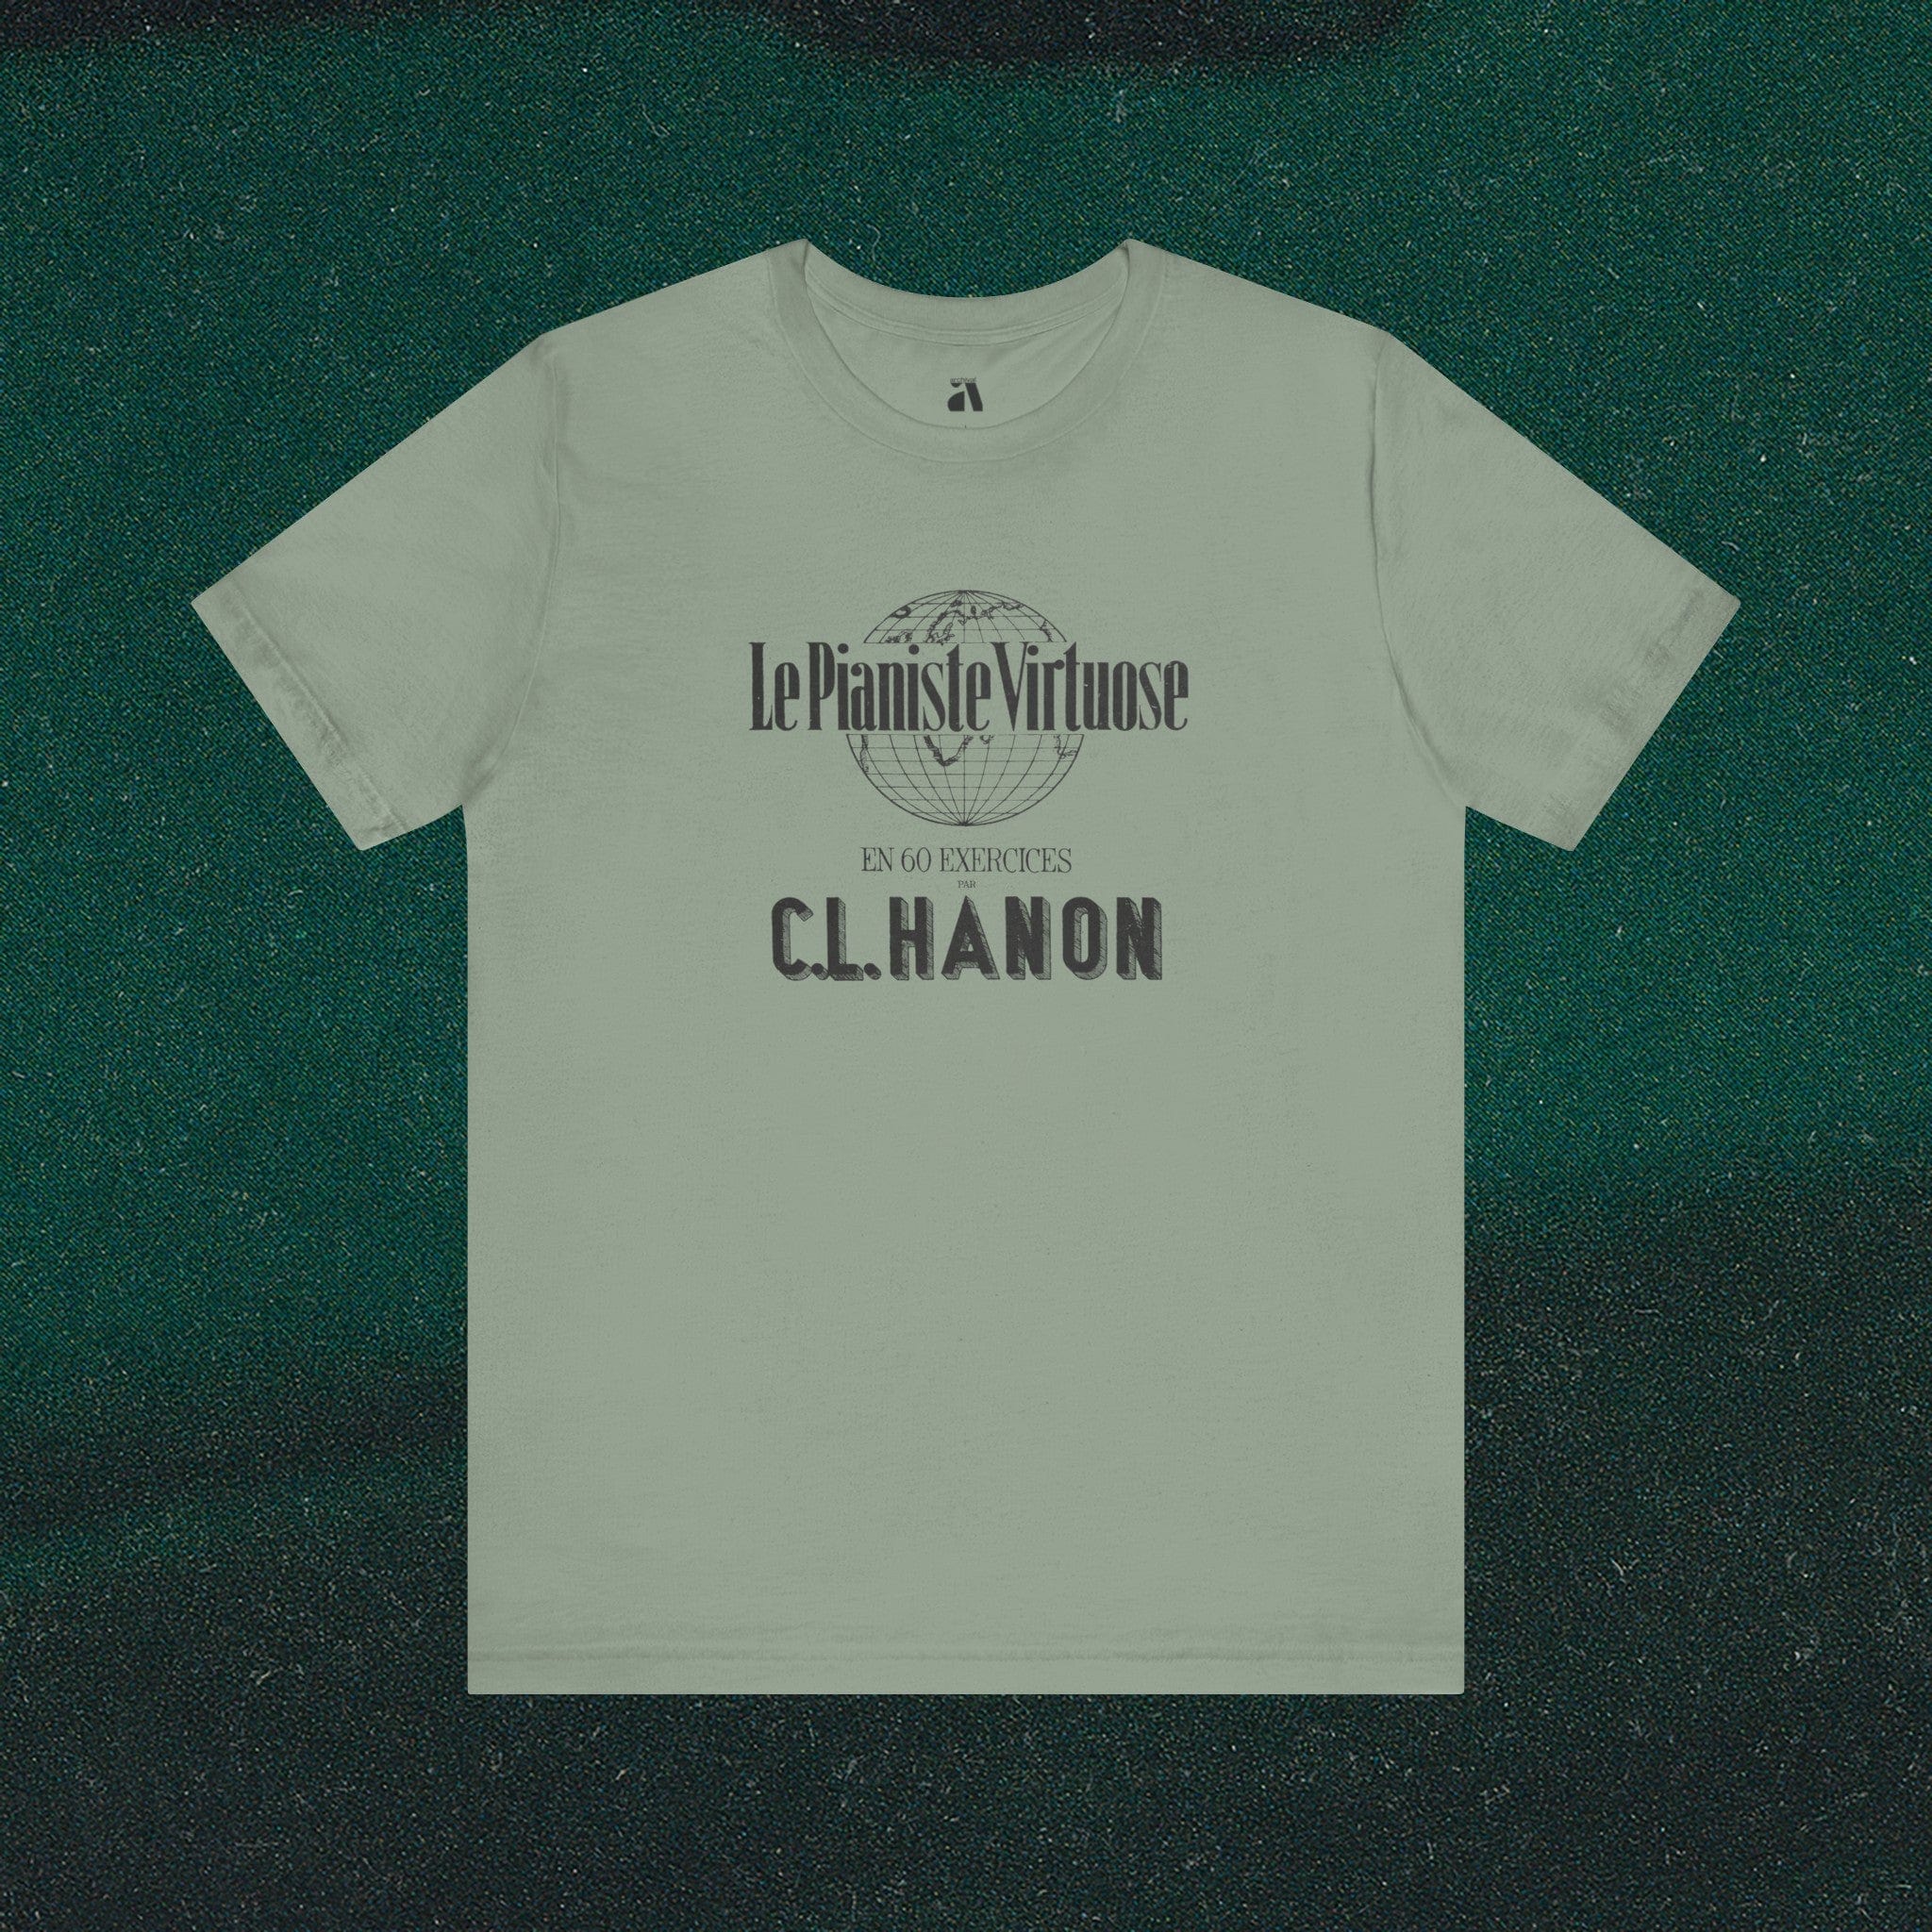 C.L. Hanon: Le Pianiste Virtuose T-Shirt